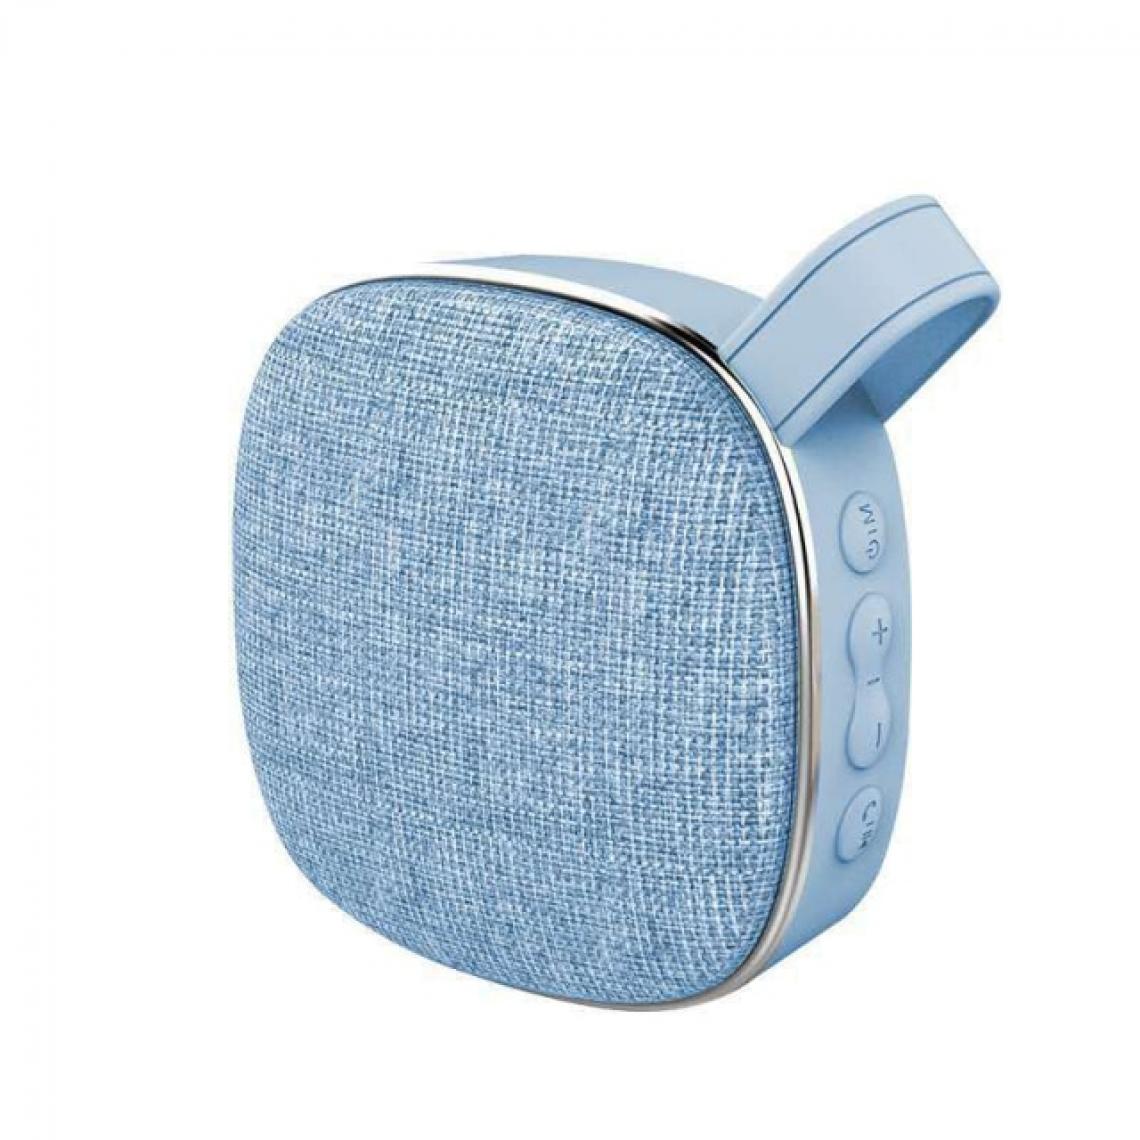 Universal - Haut-parleur Bluetooth portable en tissu Support USB extérieur Carte TF Subwoofer stéréo Haut-parleur stéréo sans fil 10W | Haut-parleur portable (bleu) - Enceinte PC